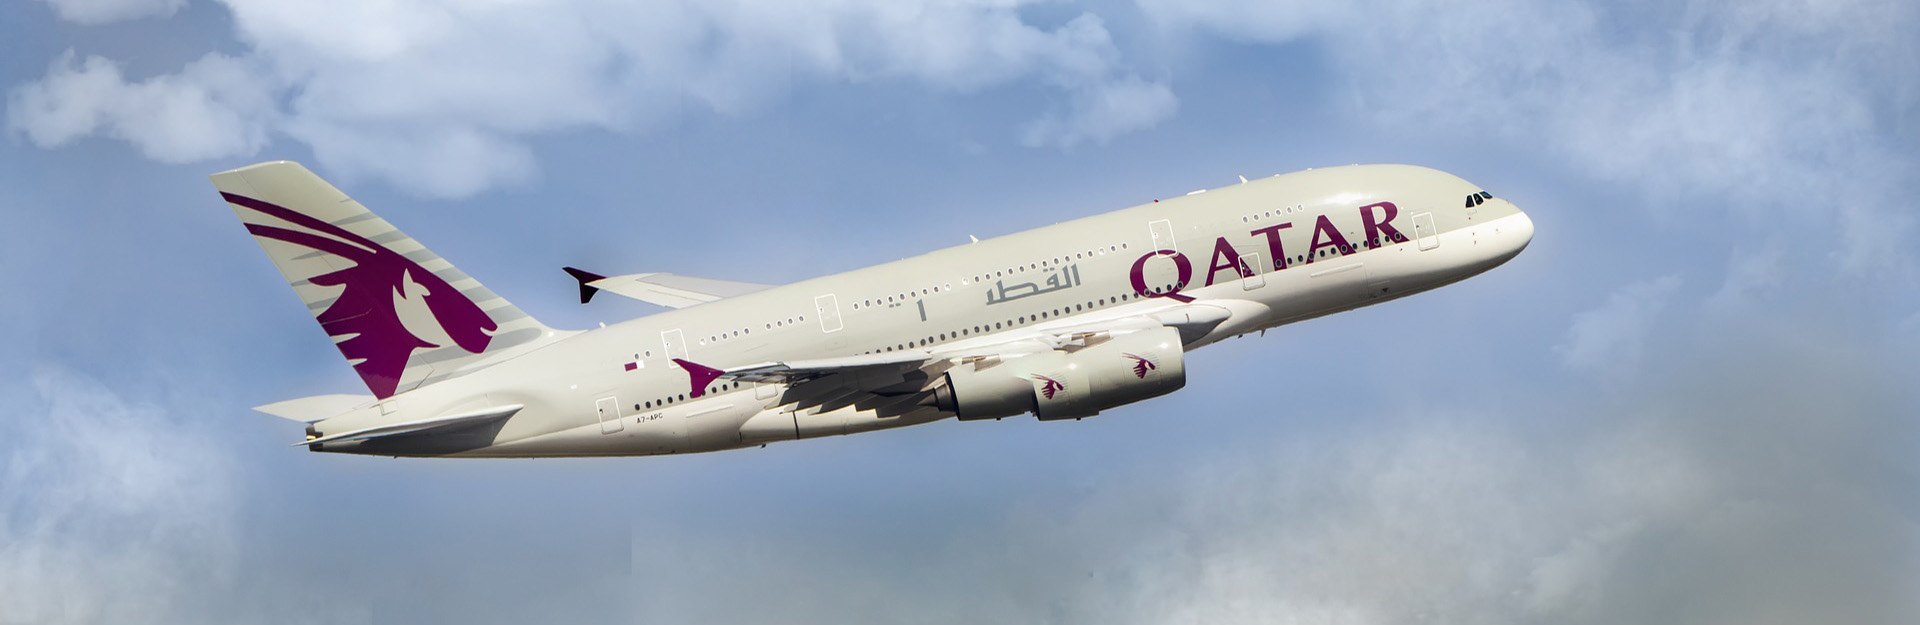 Авиабилеты в Катар - забронировать онлайн